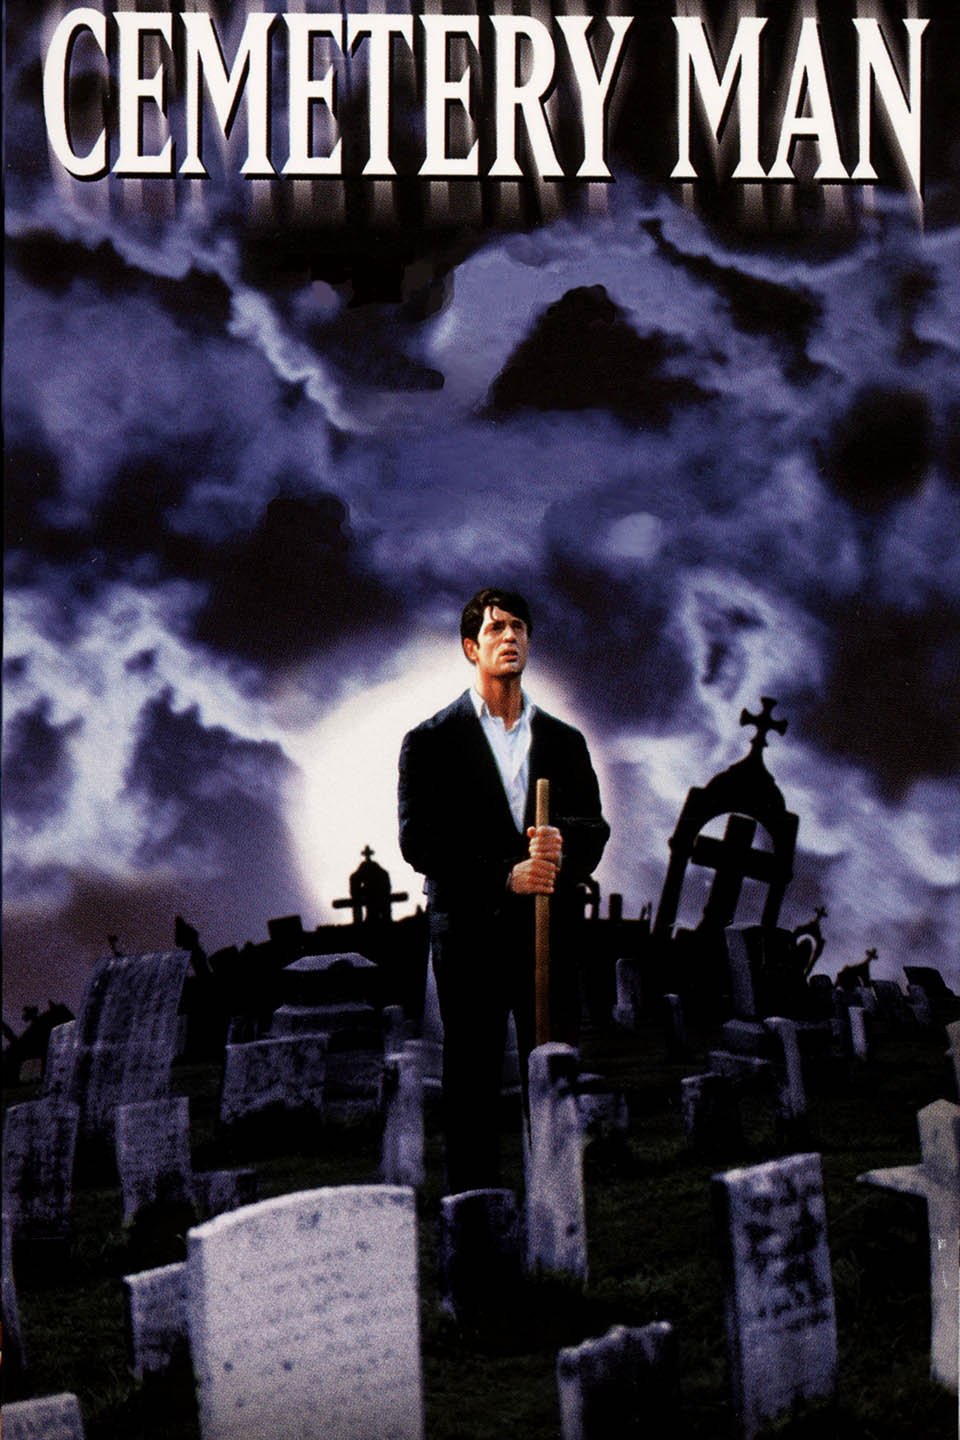 DELLAMORTE DELLAMORE Movie Poster 1995 RARE Horror Comedy 